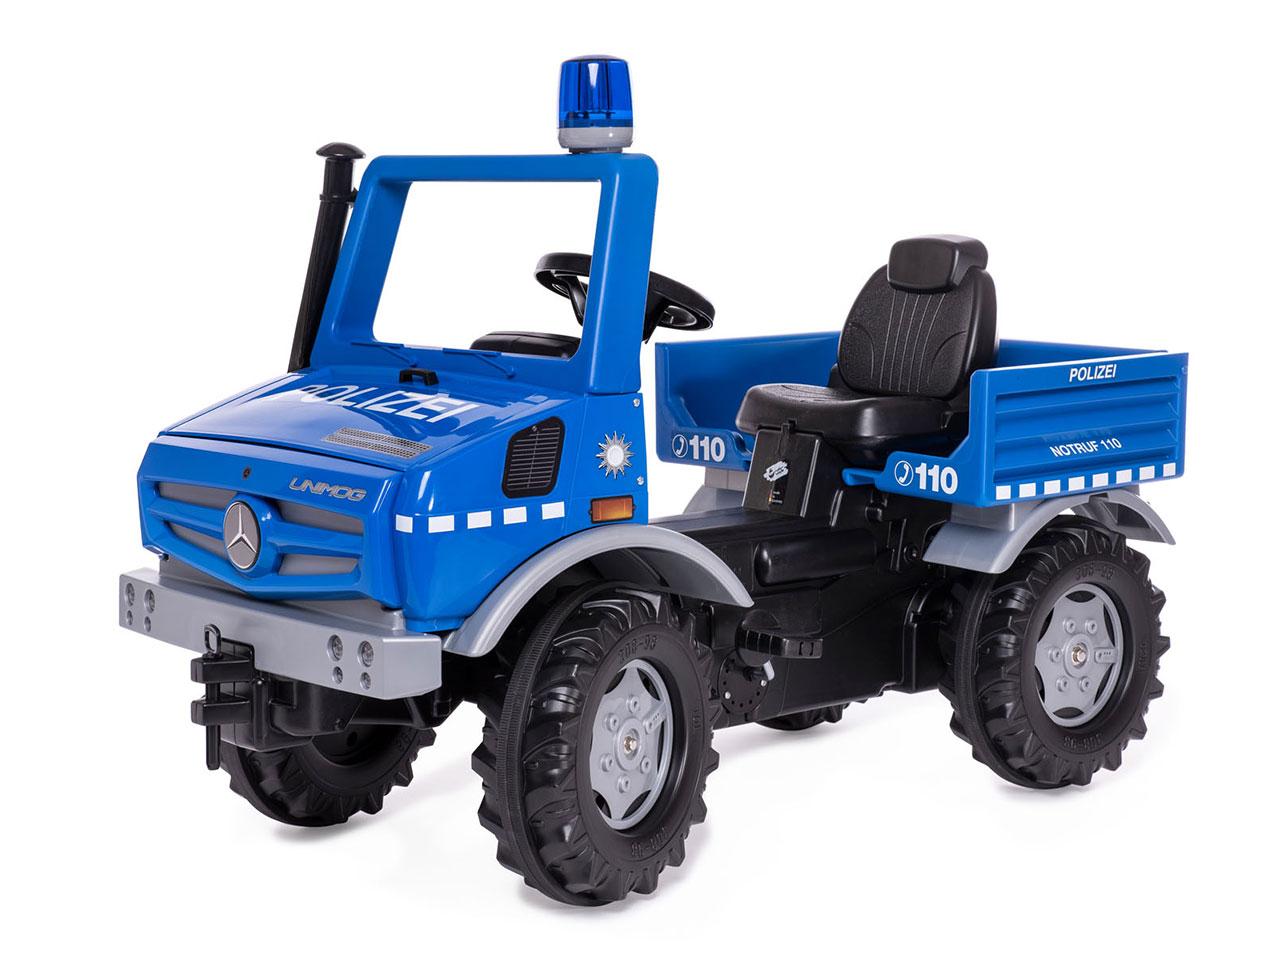 Policejní nákladní auto ROLLY TOYS Mercedes-Benz (038251), modré